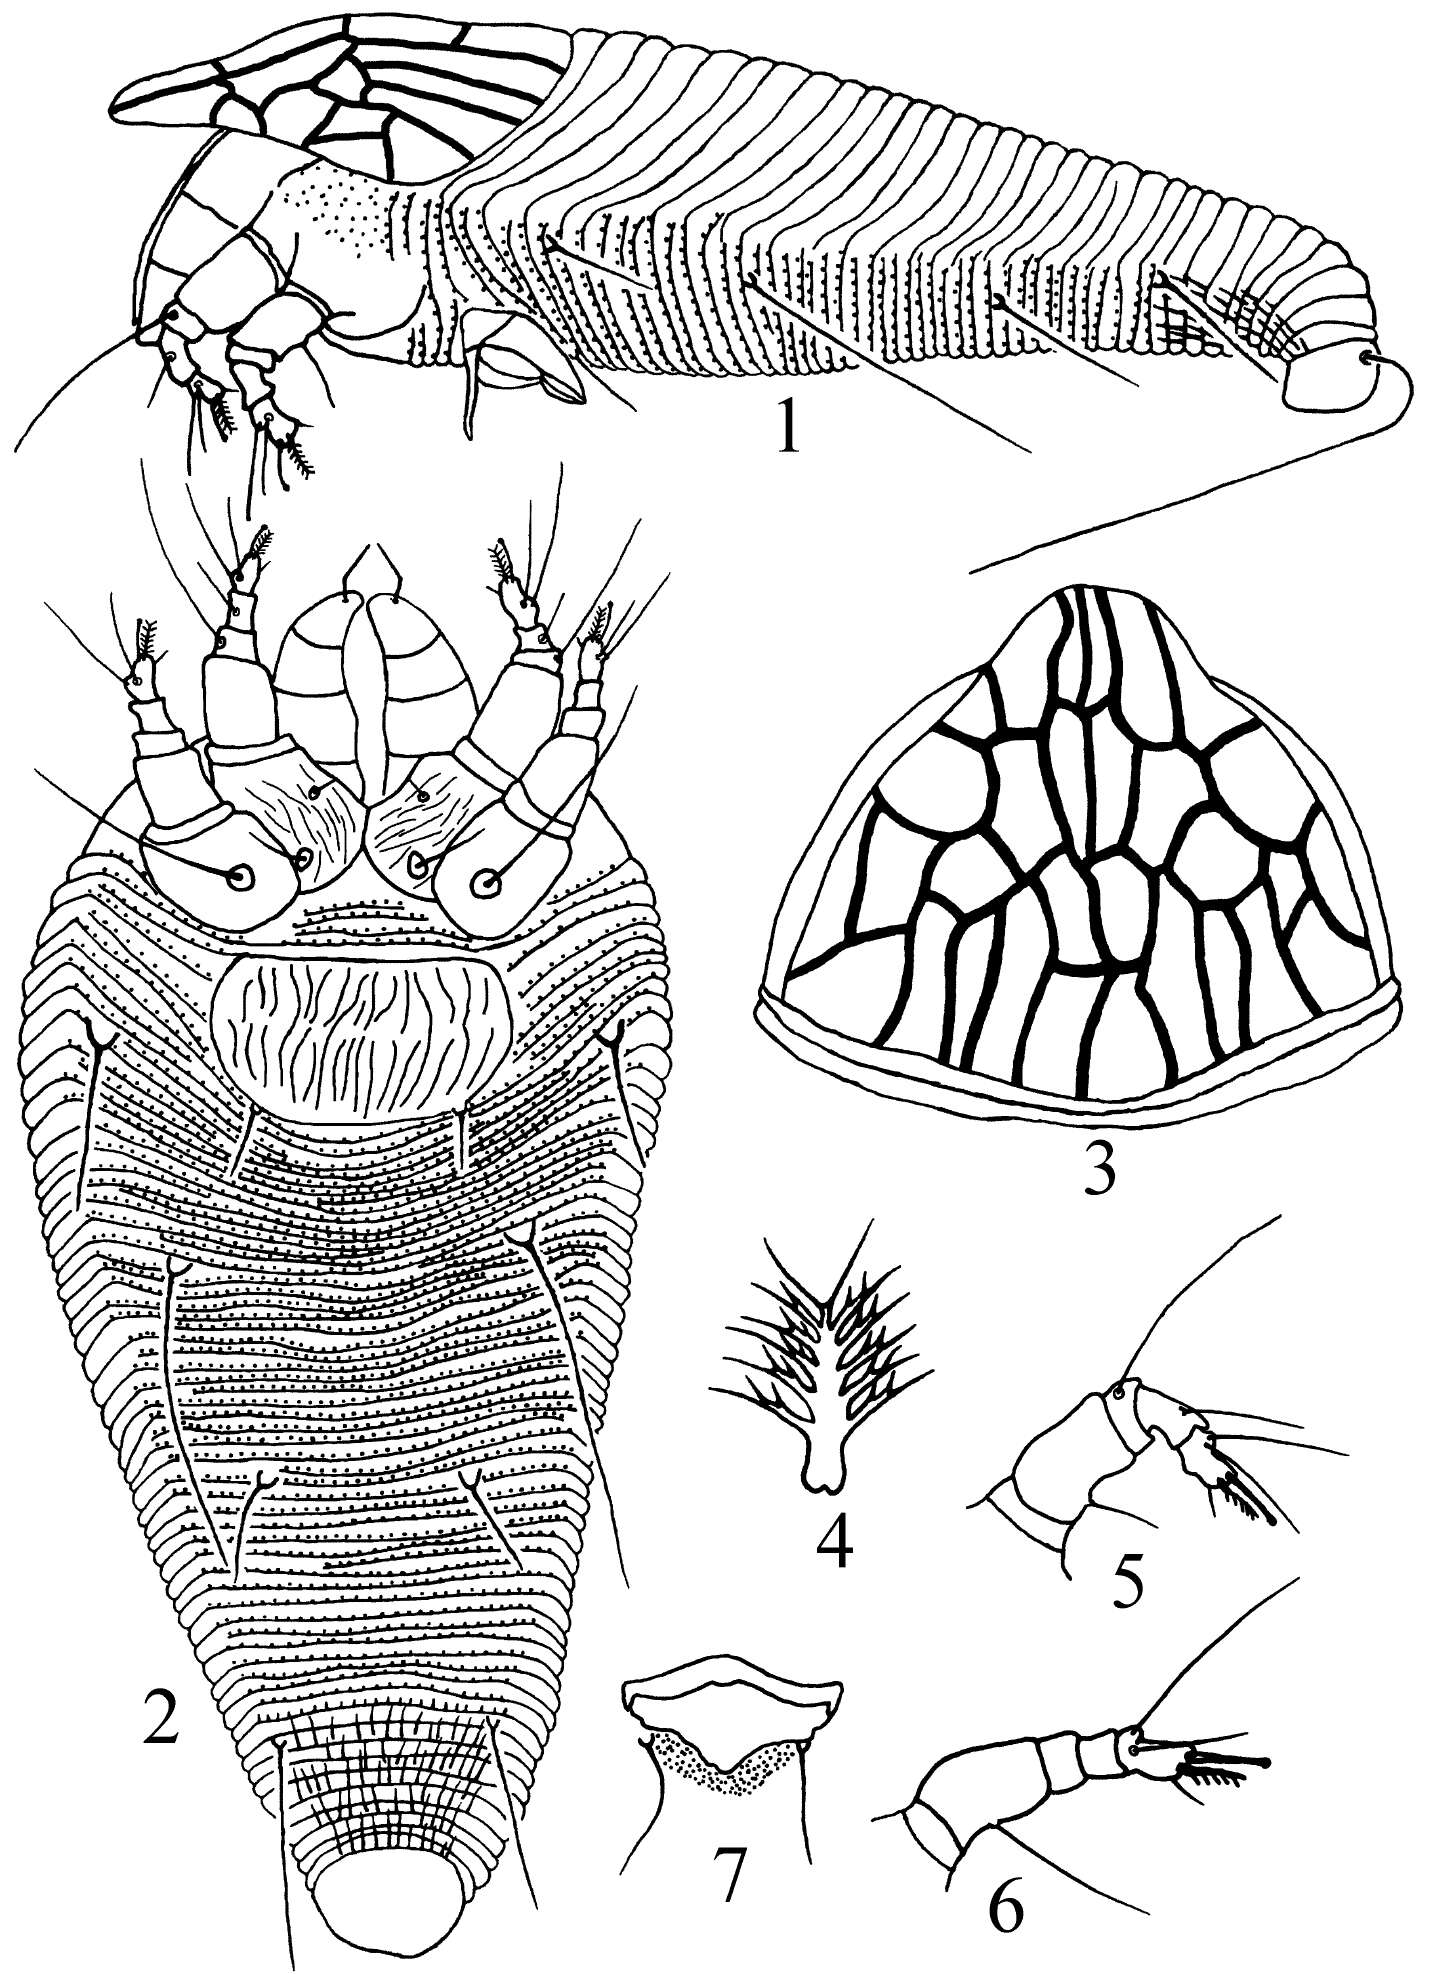 Sivun Kyllocarus reticulatus Wang, Wei & Yang 2012 kuva